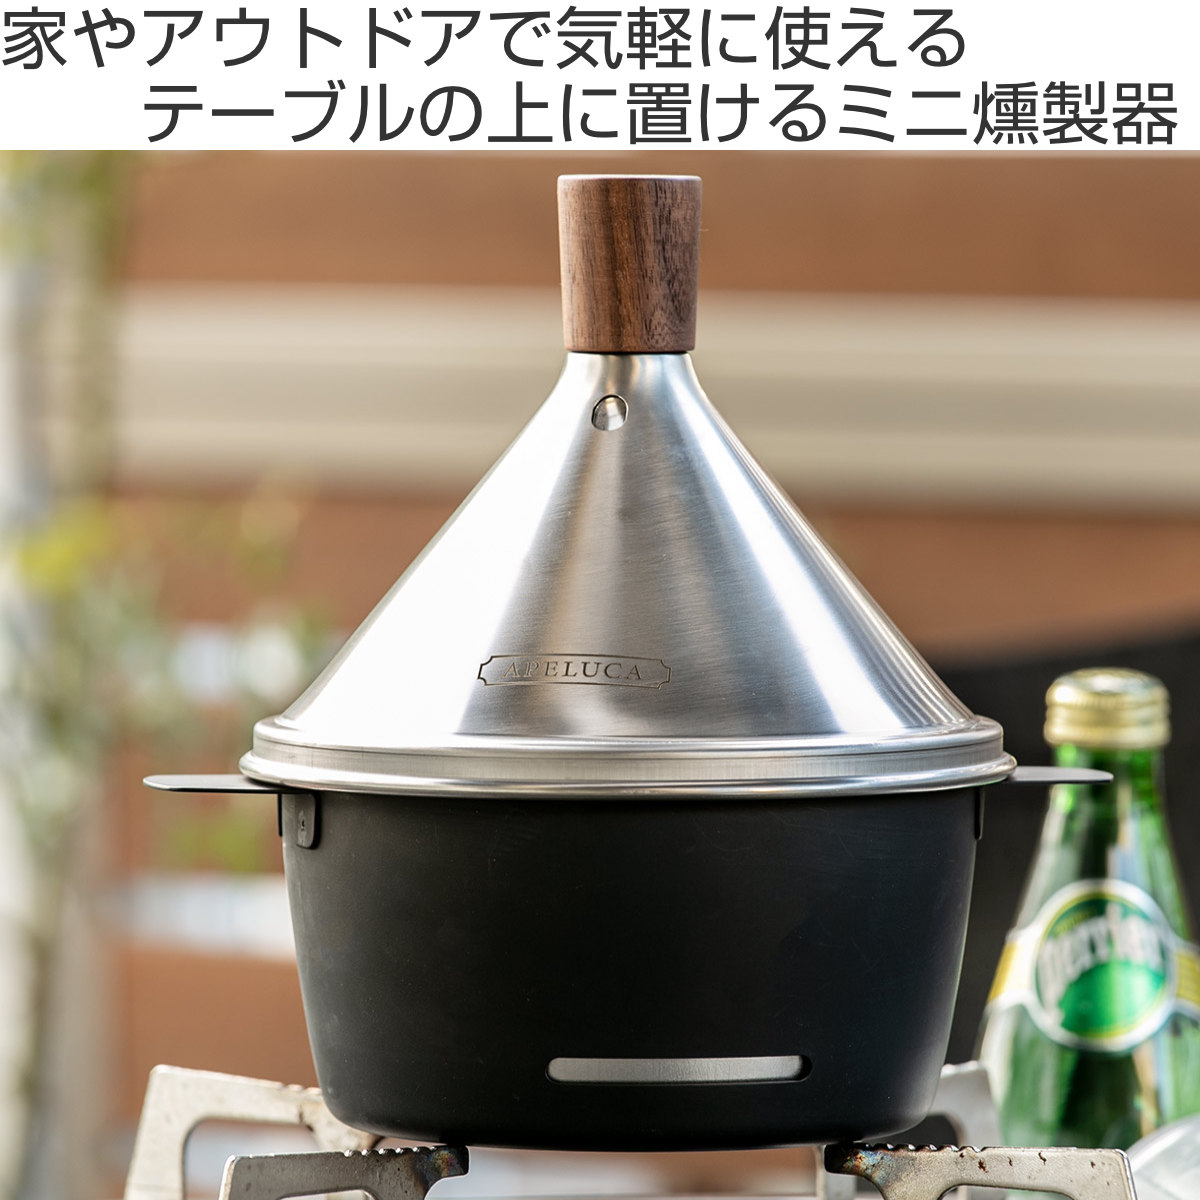 燻製器 APELUCA テーブルトップスモーカー 日本製 （ スモーカー 燻製機 燻製 燻製作り くんせい 卓上燻製器 家庭用 ）